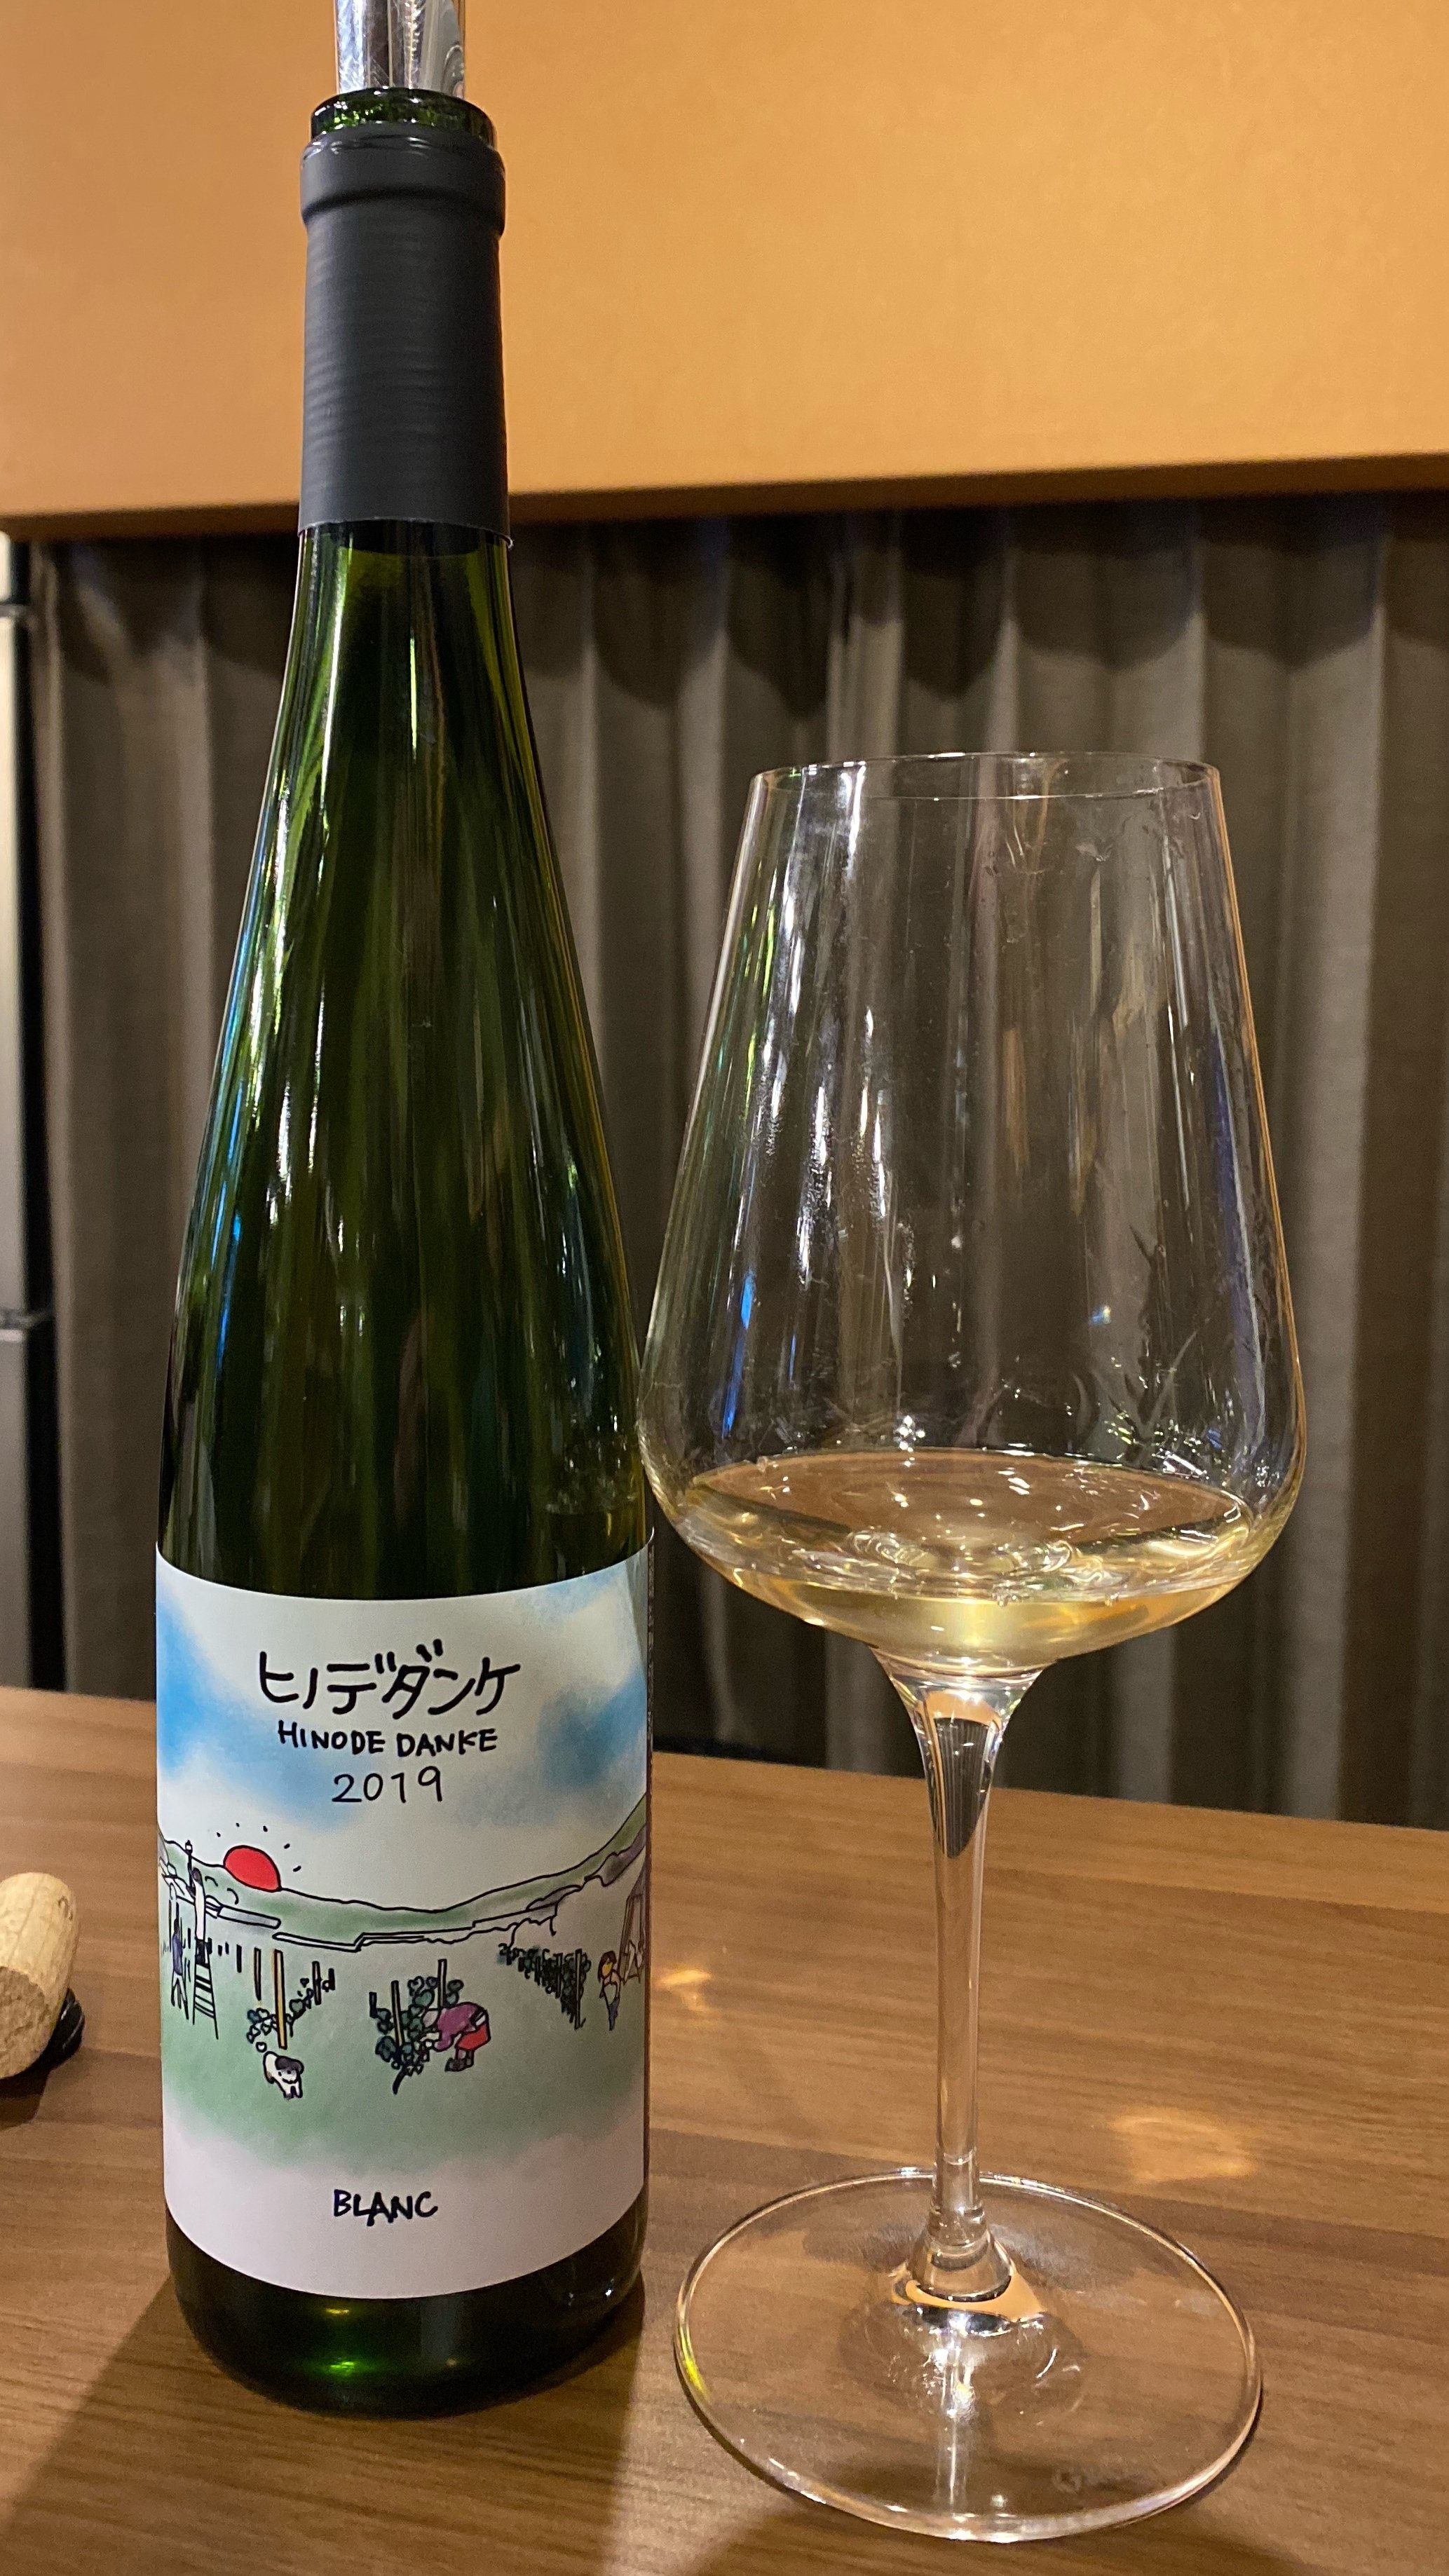 北海道ワイン】千葉ヴィンヤードヒノデダンケ Blanc ブラン 2021日本 